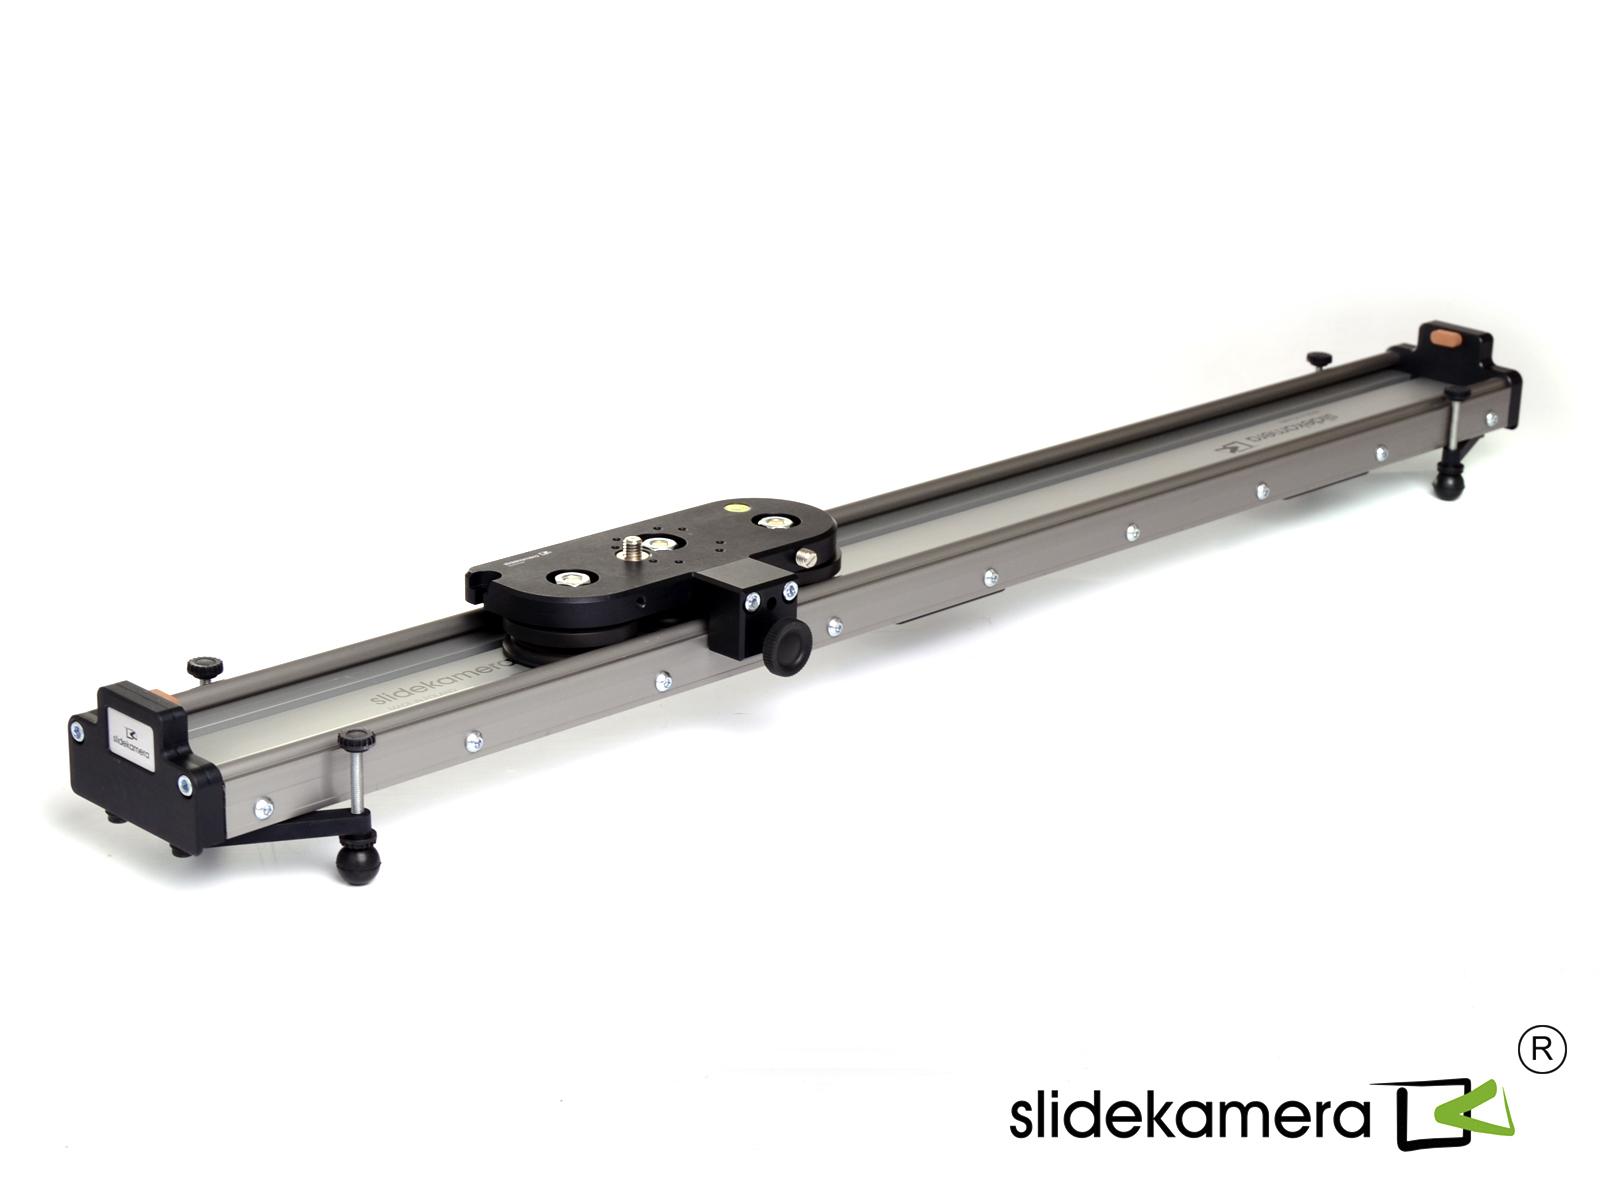  SlideKamera X-SLIDER 1000 BASIC   Ultra-mart